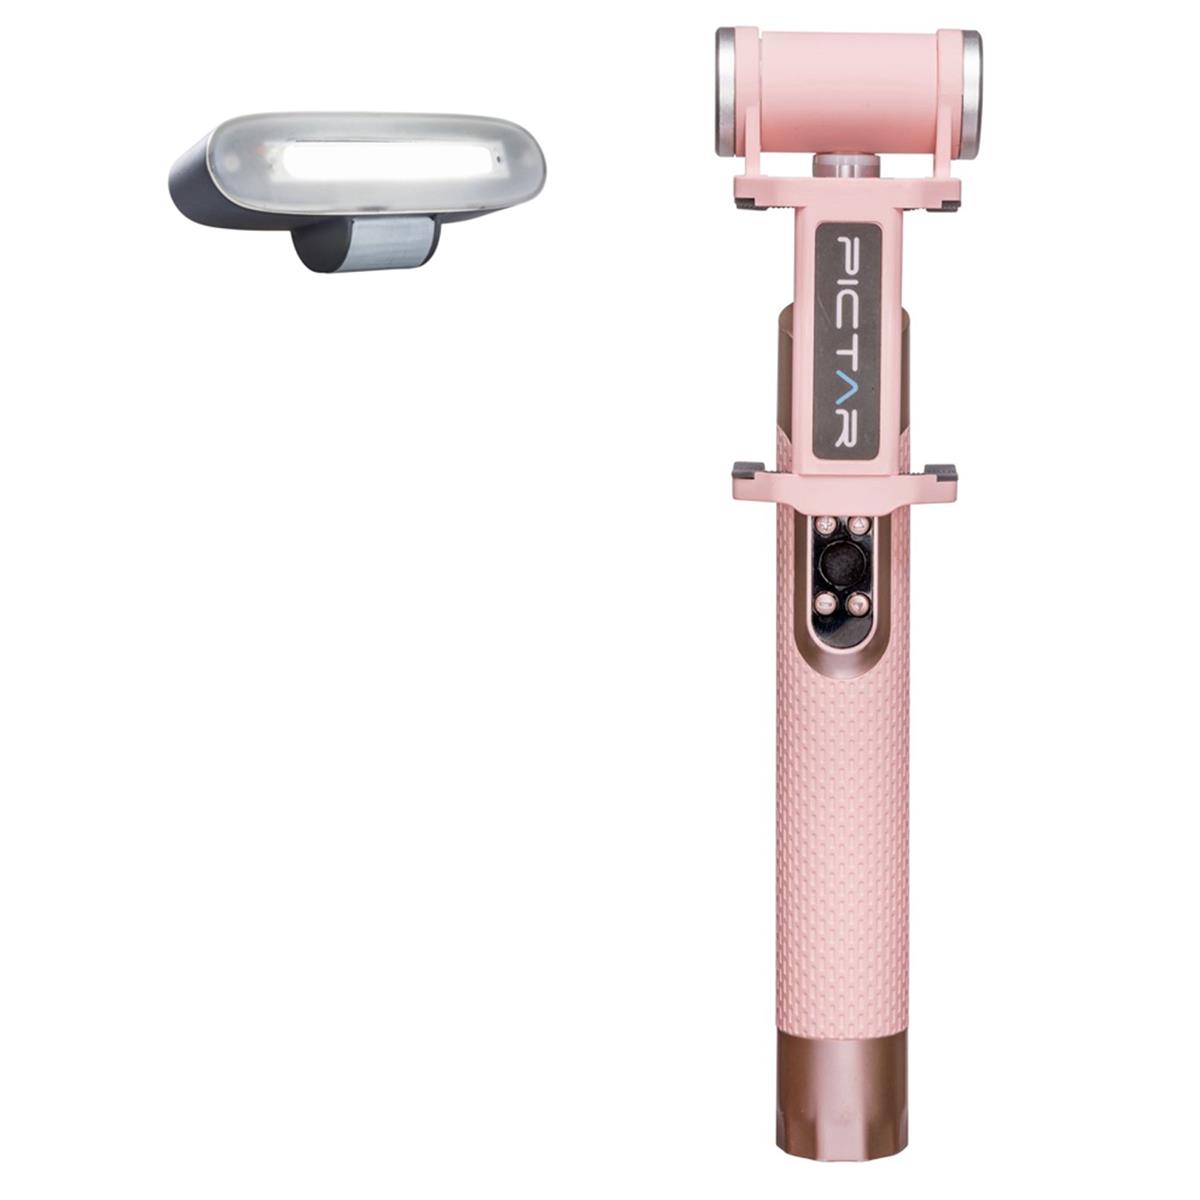 Палка для селфи Pictar Smart Light с перезаряжаемой батареей, цвет Millennial Pink